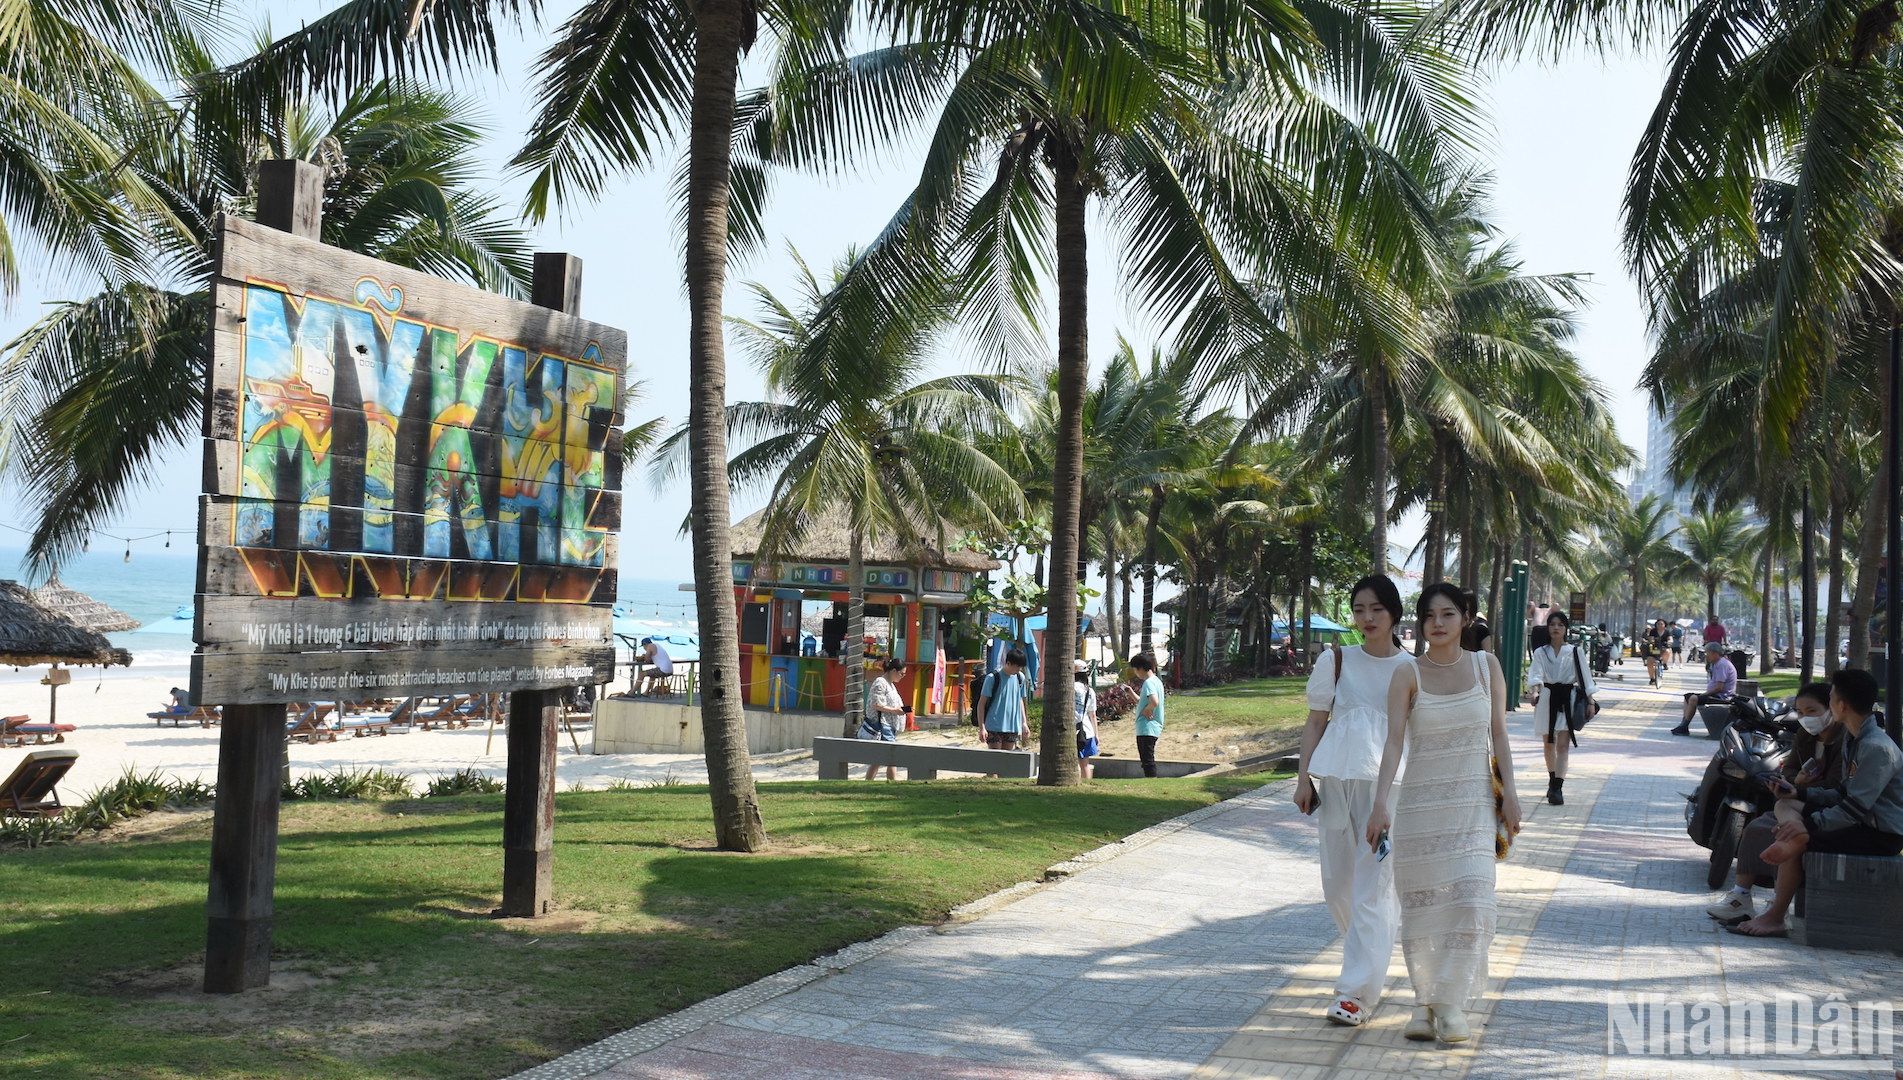 Du khách nước ngoài tham quan, tận hưởng không khí trong lành tại bãi biển Mỹ Khê - 1 trong 10 bãi biển hàng đầu châu Á. Ảnh: ANH ĐÀO